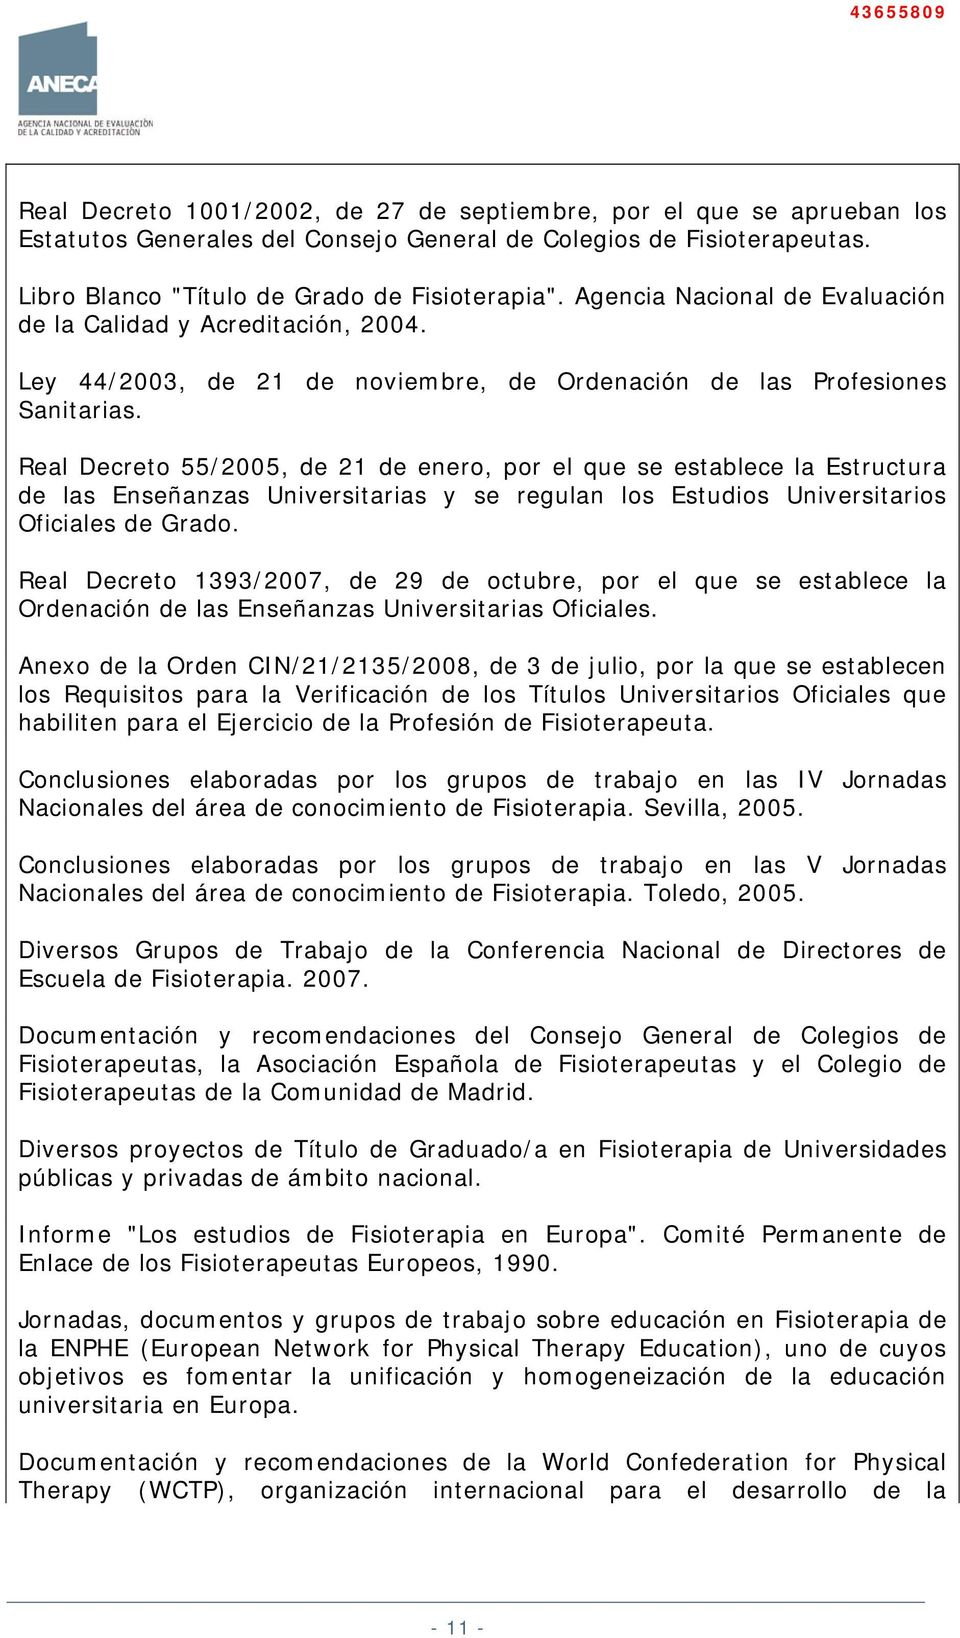 Real Decreto 55/2005, de 21 de enero, por el que se establece la Estructura de las Enseñanzas Universitarias y se regulan los Estudios Universitarios Oficiales de Grado.